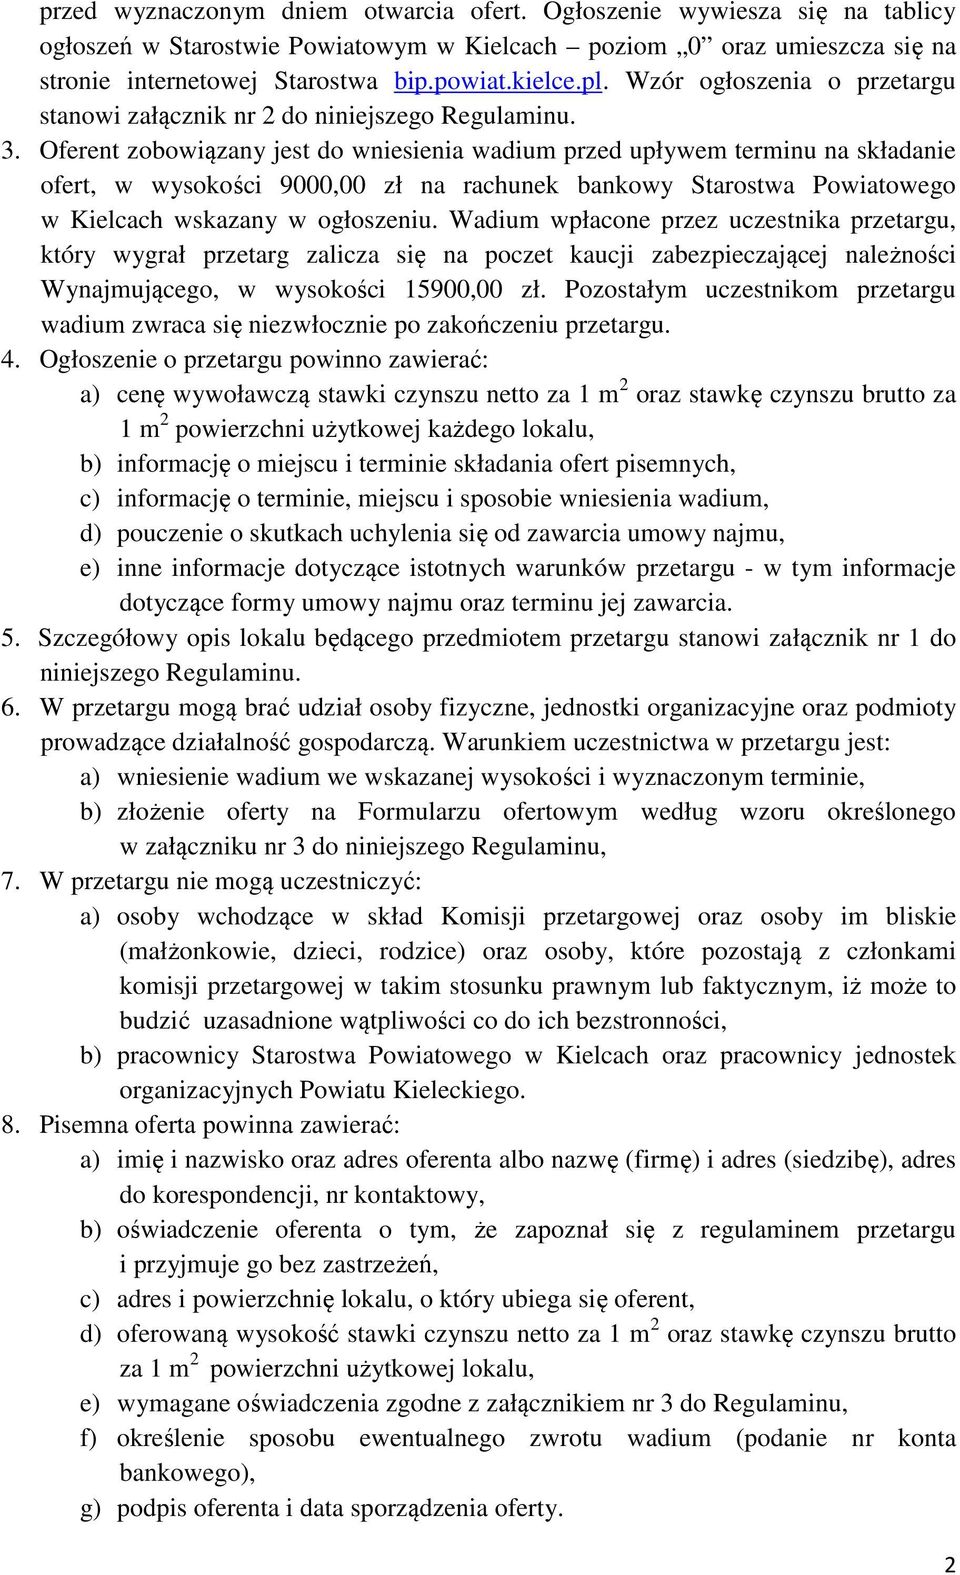 Oferent zobowiązany jest do wniesienia wadium przed upływem terminu na składanie ofert, w wysokości 9000,00 zł na rachunek bankowy Starostwa Powiatowego w Kielcach wskazany w ogłoszeniu.